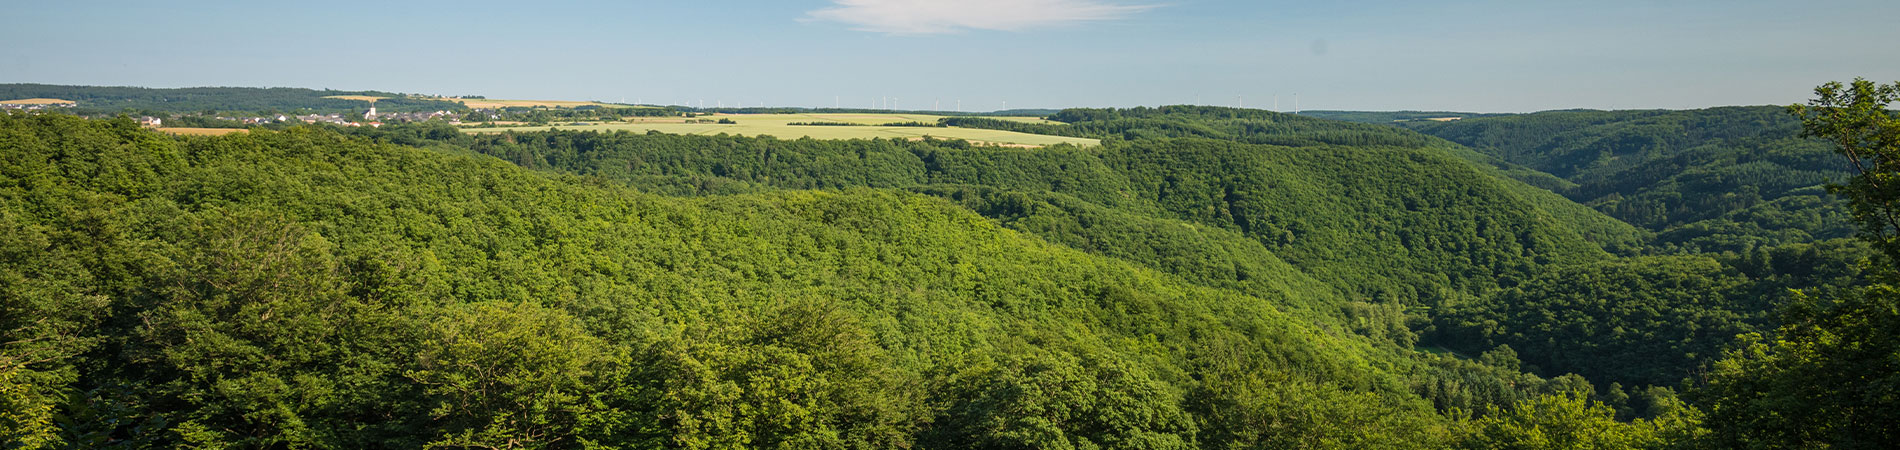 Kopfbild Hunsrück Luftbild von Waldlandschaft